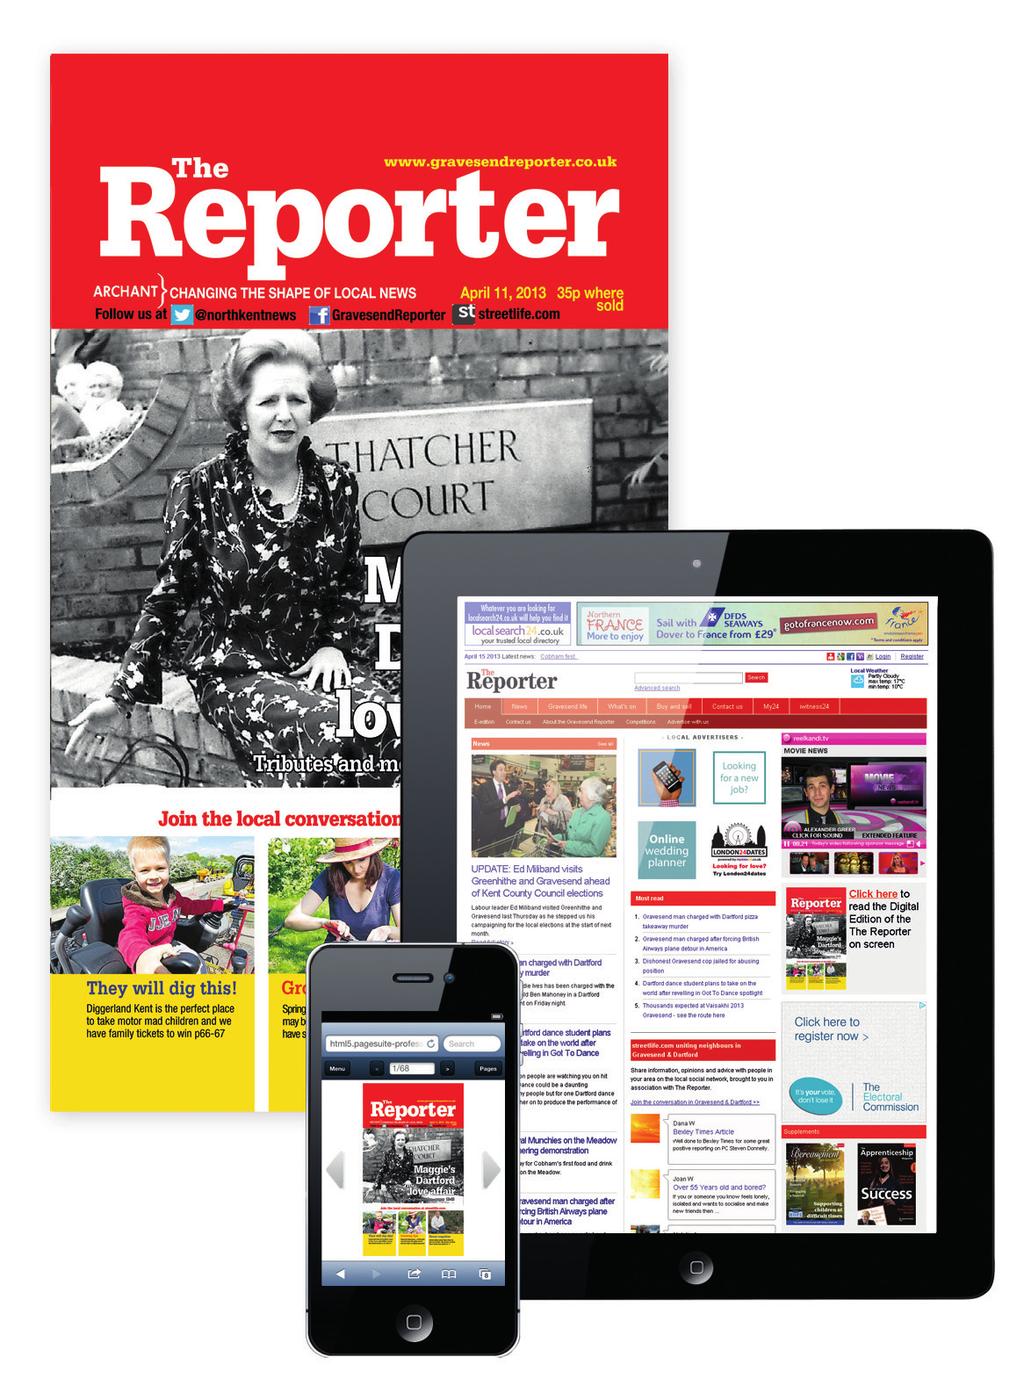 THE REPORTER www.gravesendreporter.co.uk WEBSITE E-EDITION 86,214 4,431 427 Adult wkly reach Av.